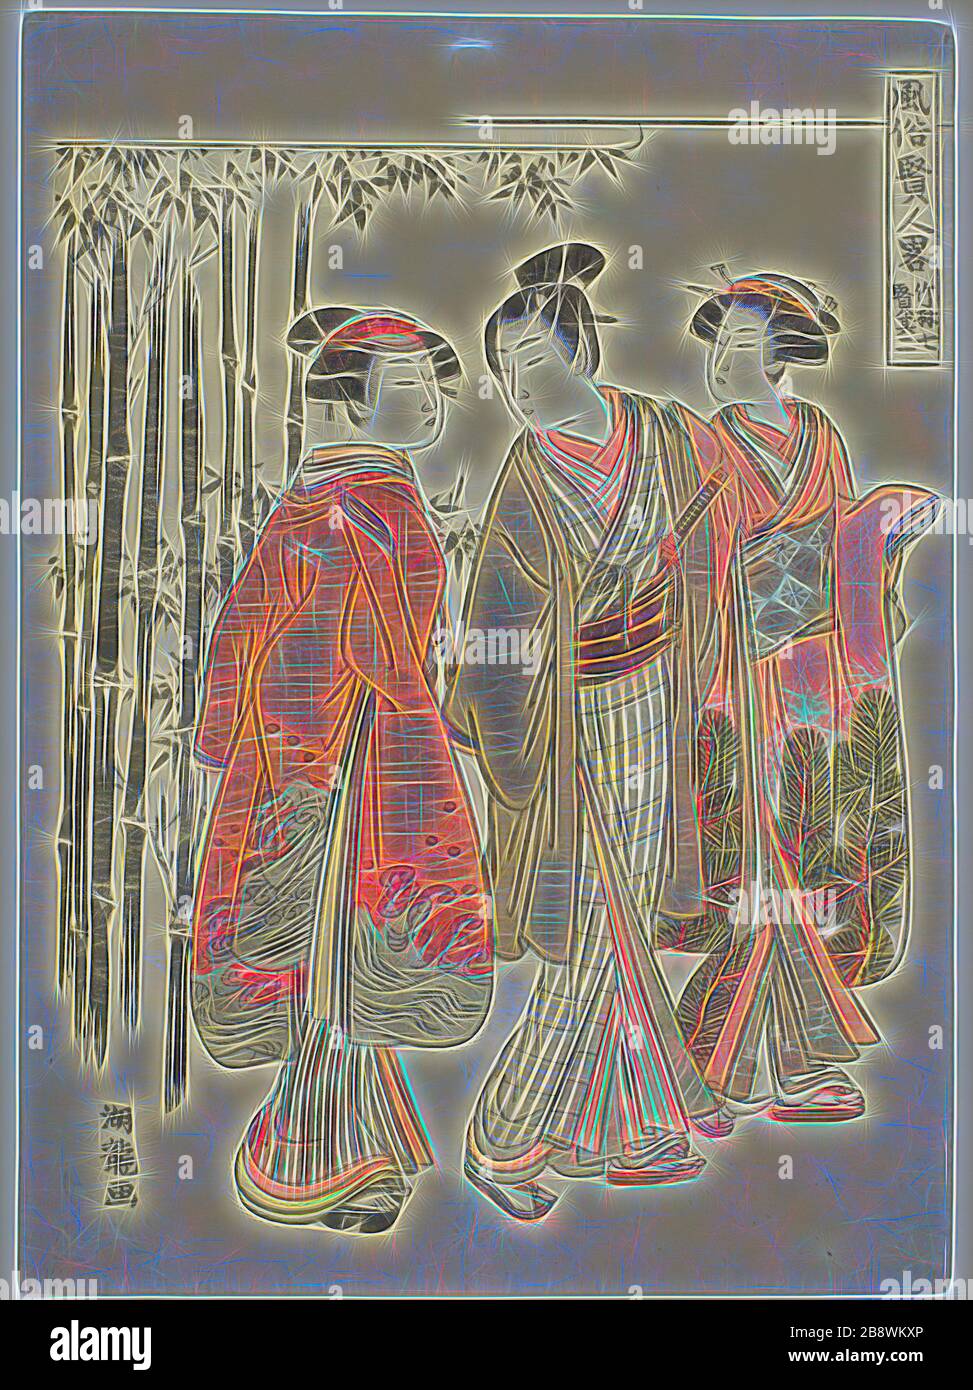 Seven Sages of the Bamboo Grove, Nr. 2 (Chikurin shichiken sono ni), from the Series Popular versions of Sages (Fuzoku kenjin ryaku), c 1776/81, Isoda Koryusai, Japanisch, 1735-17500, Japan, Farbholzblockdruck, Chuban, 10 1/2 x 7 5/8 Zoll, von Gibon neu vorgestellt, Design von warmfröhlichem Leuchten von Helligkeit und Lichtstrahlen. Klassische Kunst mit moderner Note neu erfunden. Fotografie, inspiriert vom Futurismus, die dynamische Energie moderner Technologie, Bewegung, Geschwindigkeit und Kultur revolutionieren. Stockfoto